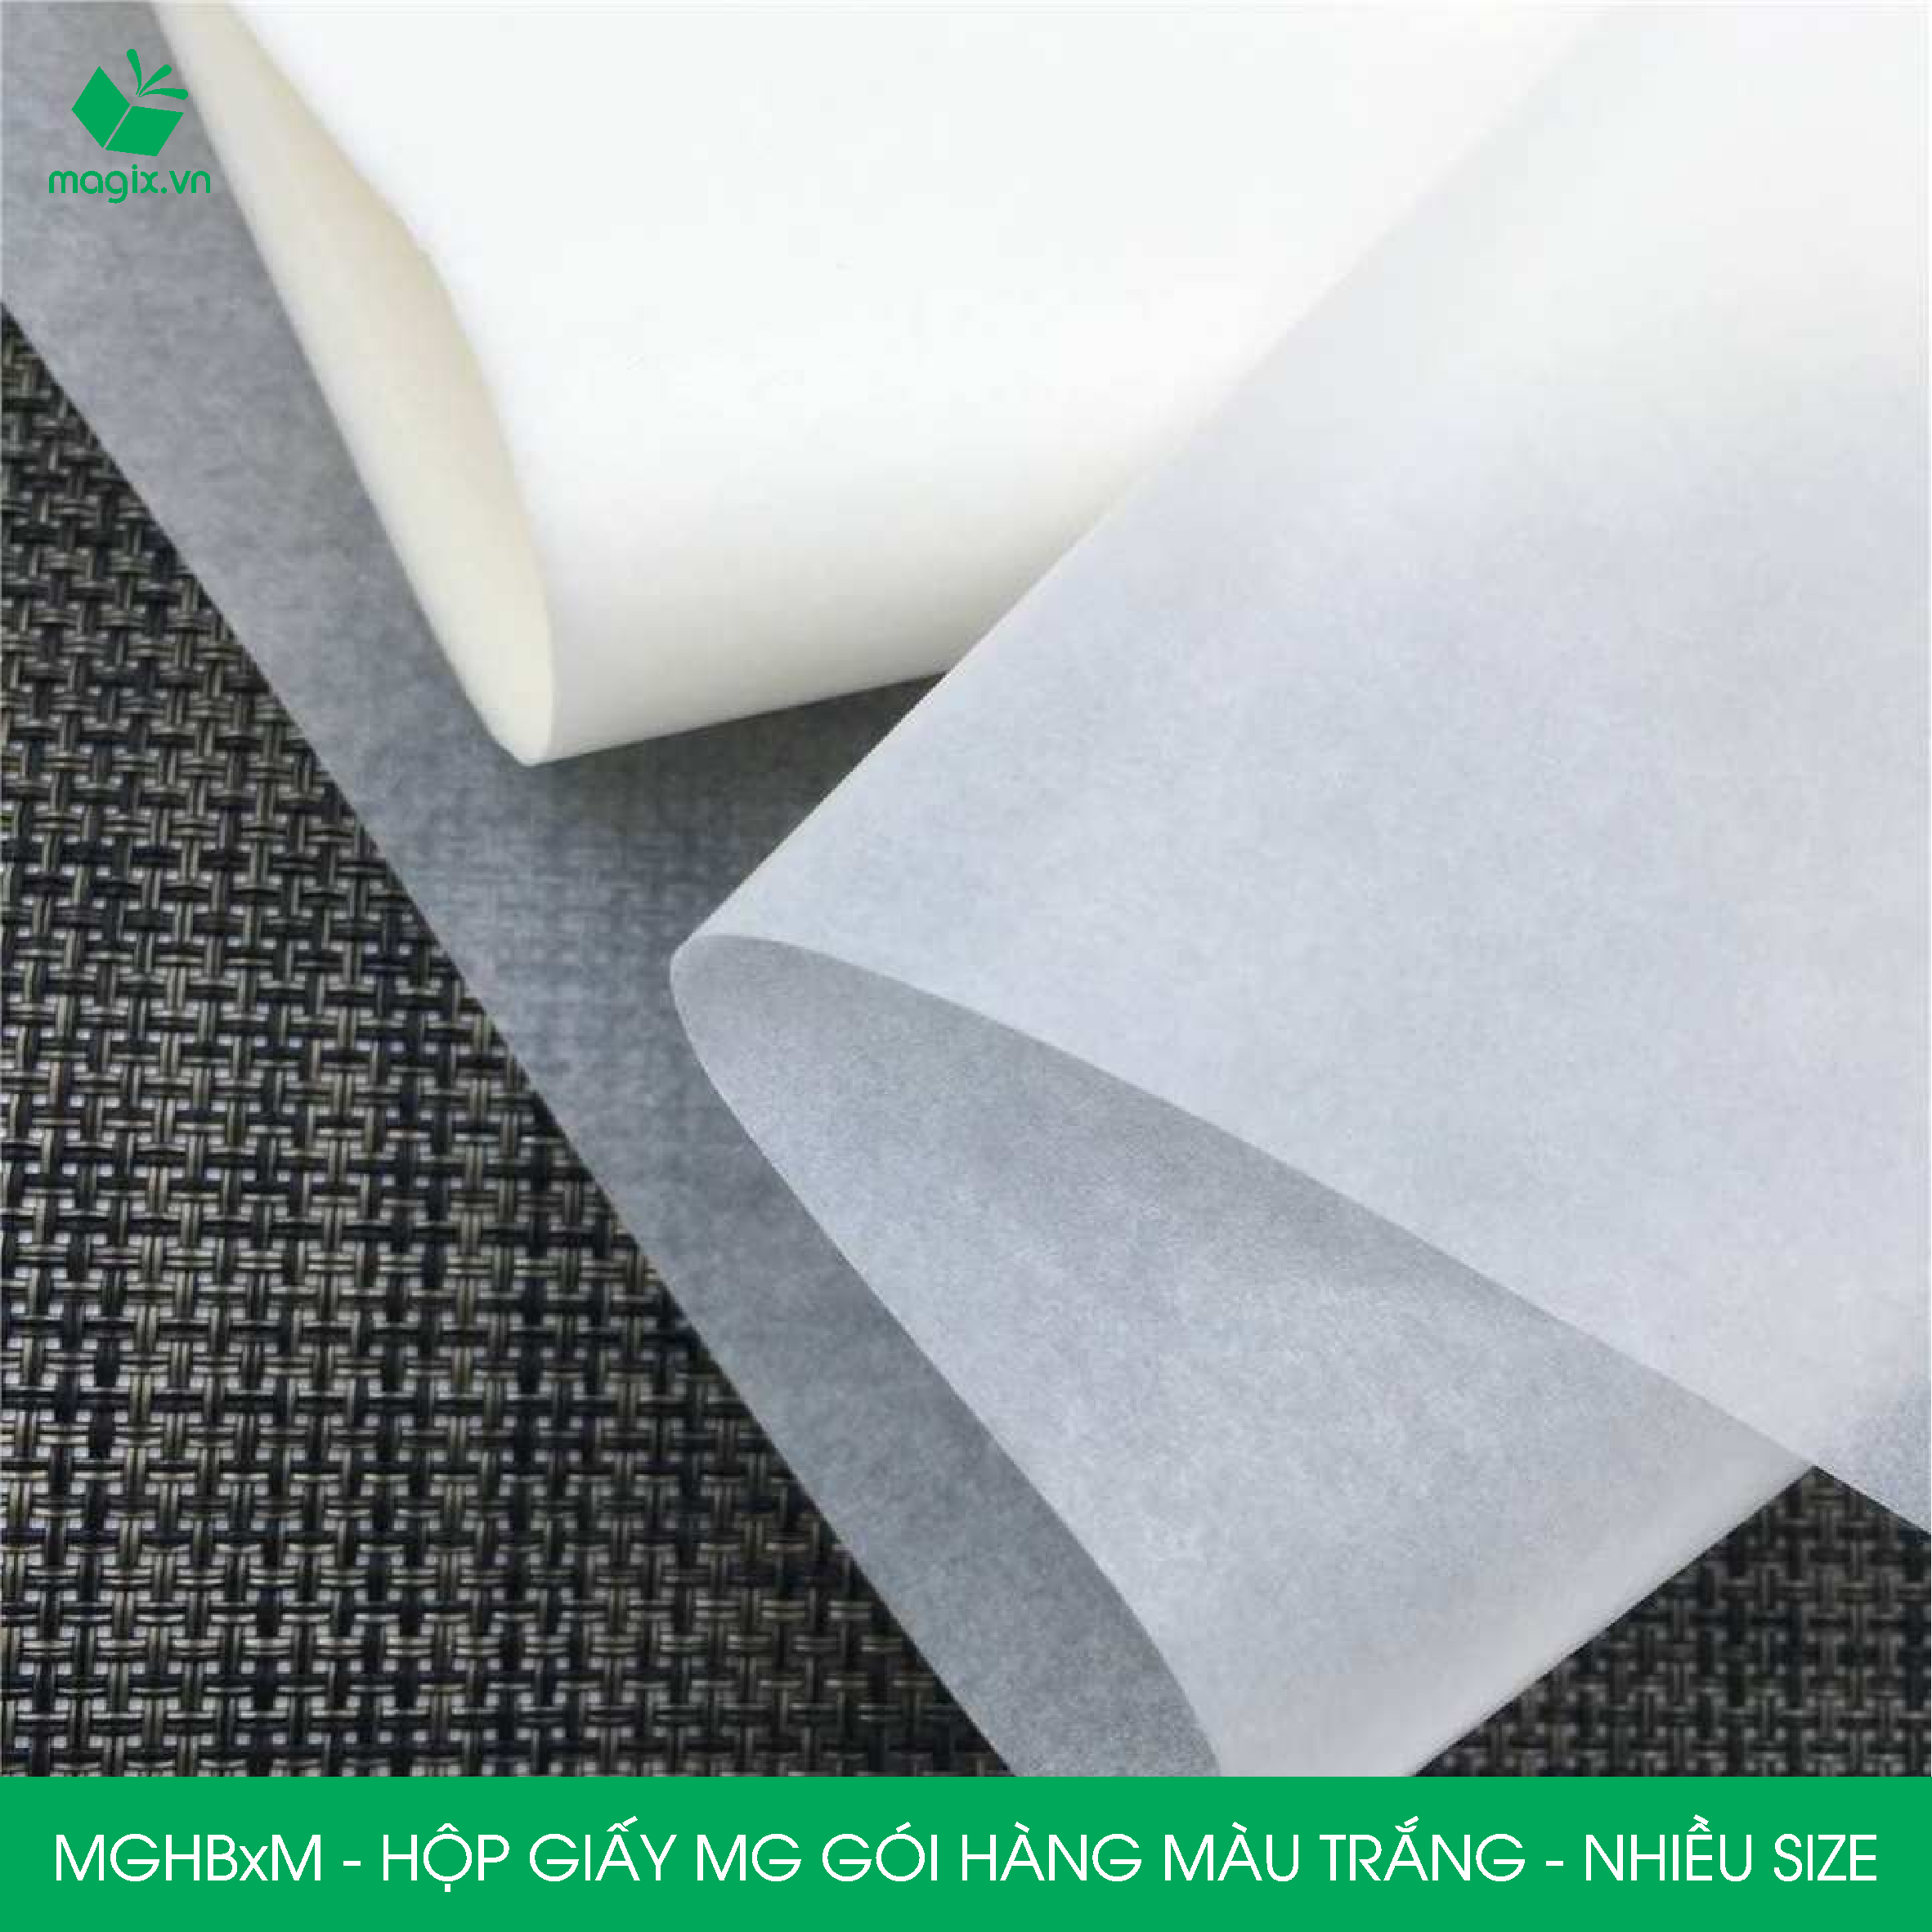 MGHB - Hộp cuộn giấy MG, cuộn giấy Pelure trắng gói hàng, giấy chống ẩm 1 mặt bóng, cuộn giấy bọc hàng thời trang - Nhiều kích thước